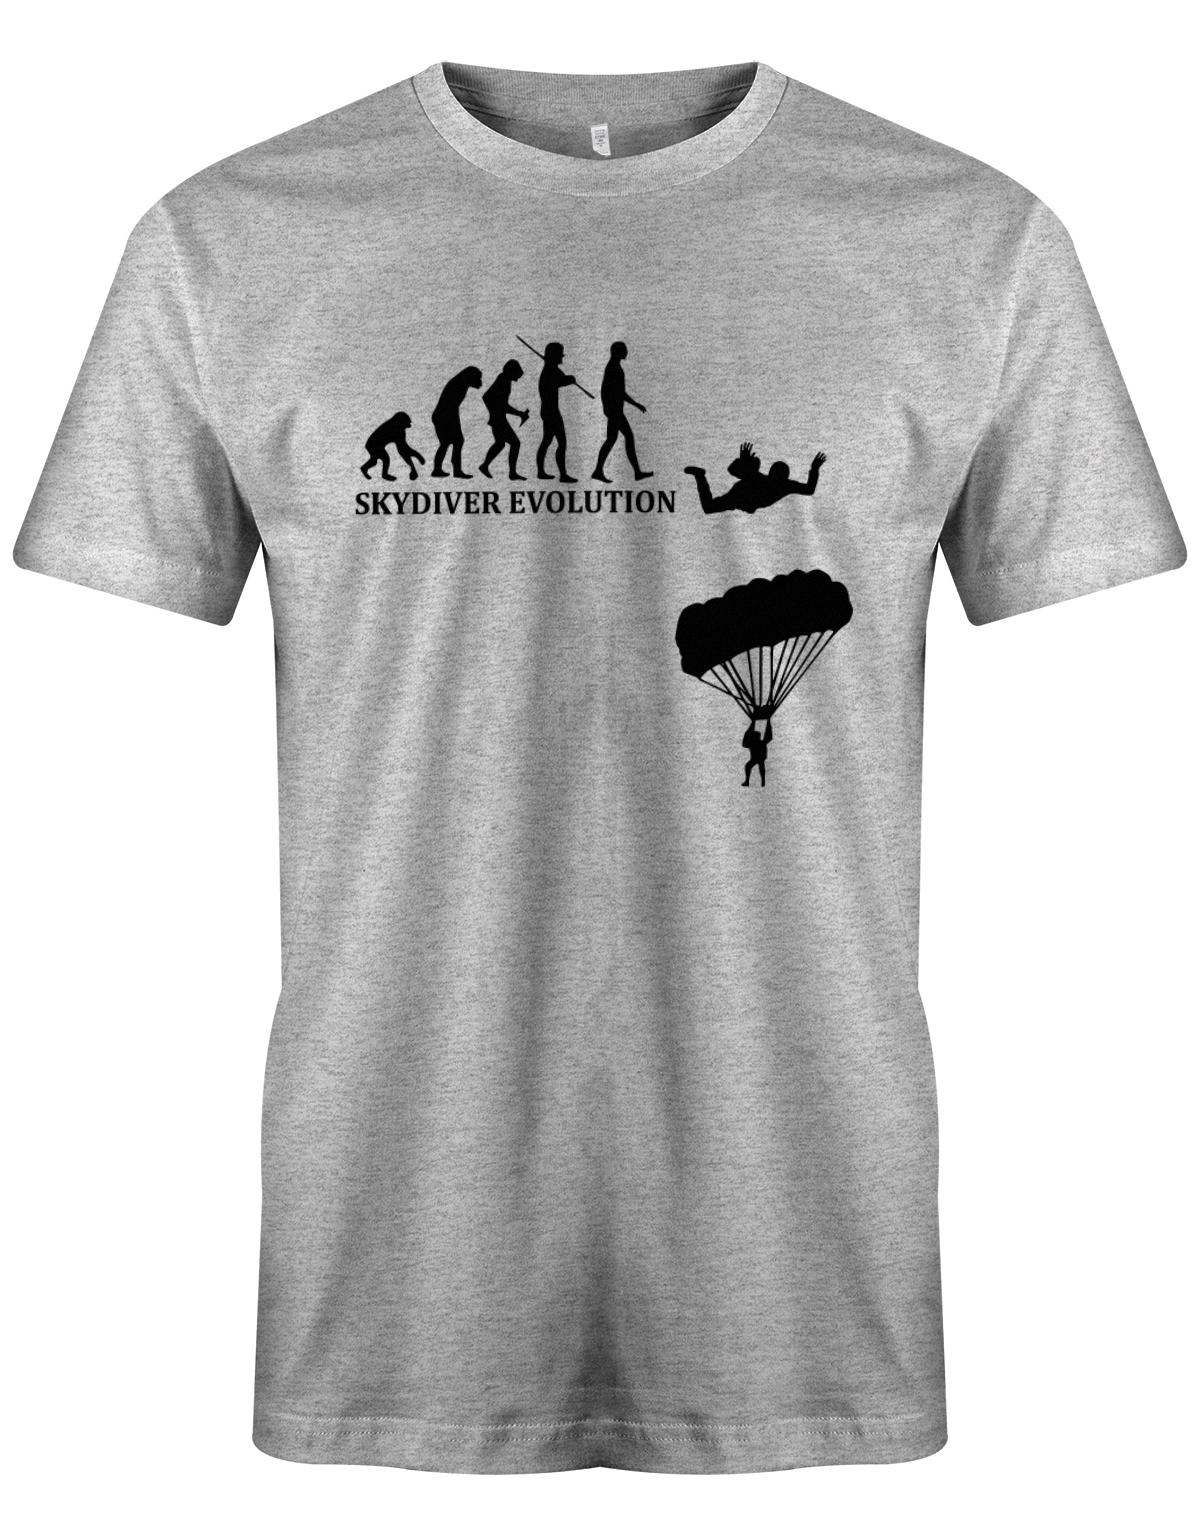 Skydiver-Fallschirmspringer-Evolution-Herren-Shirt-Grau